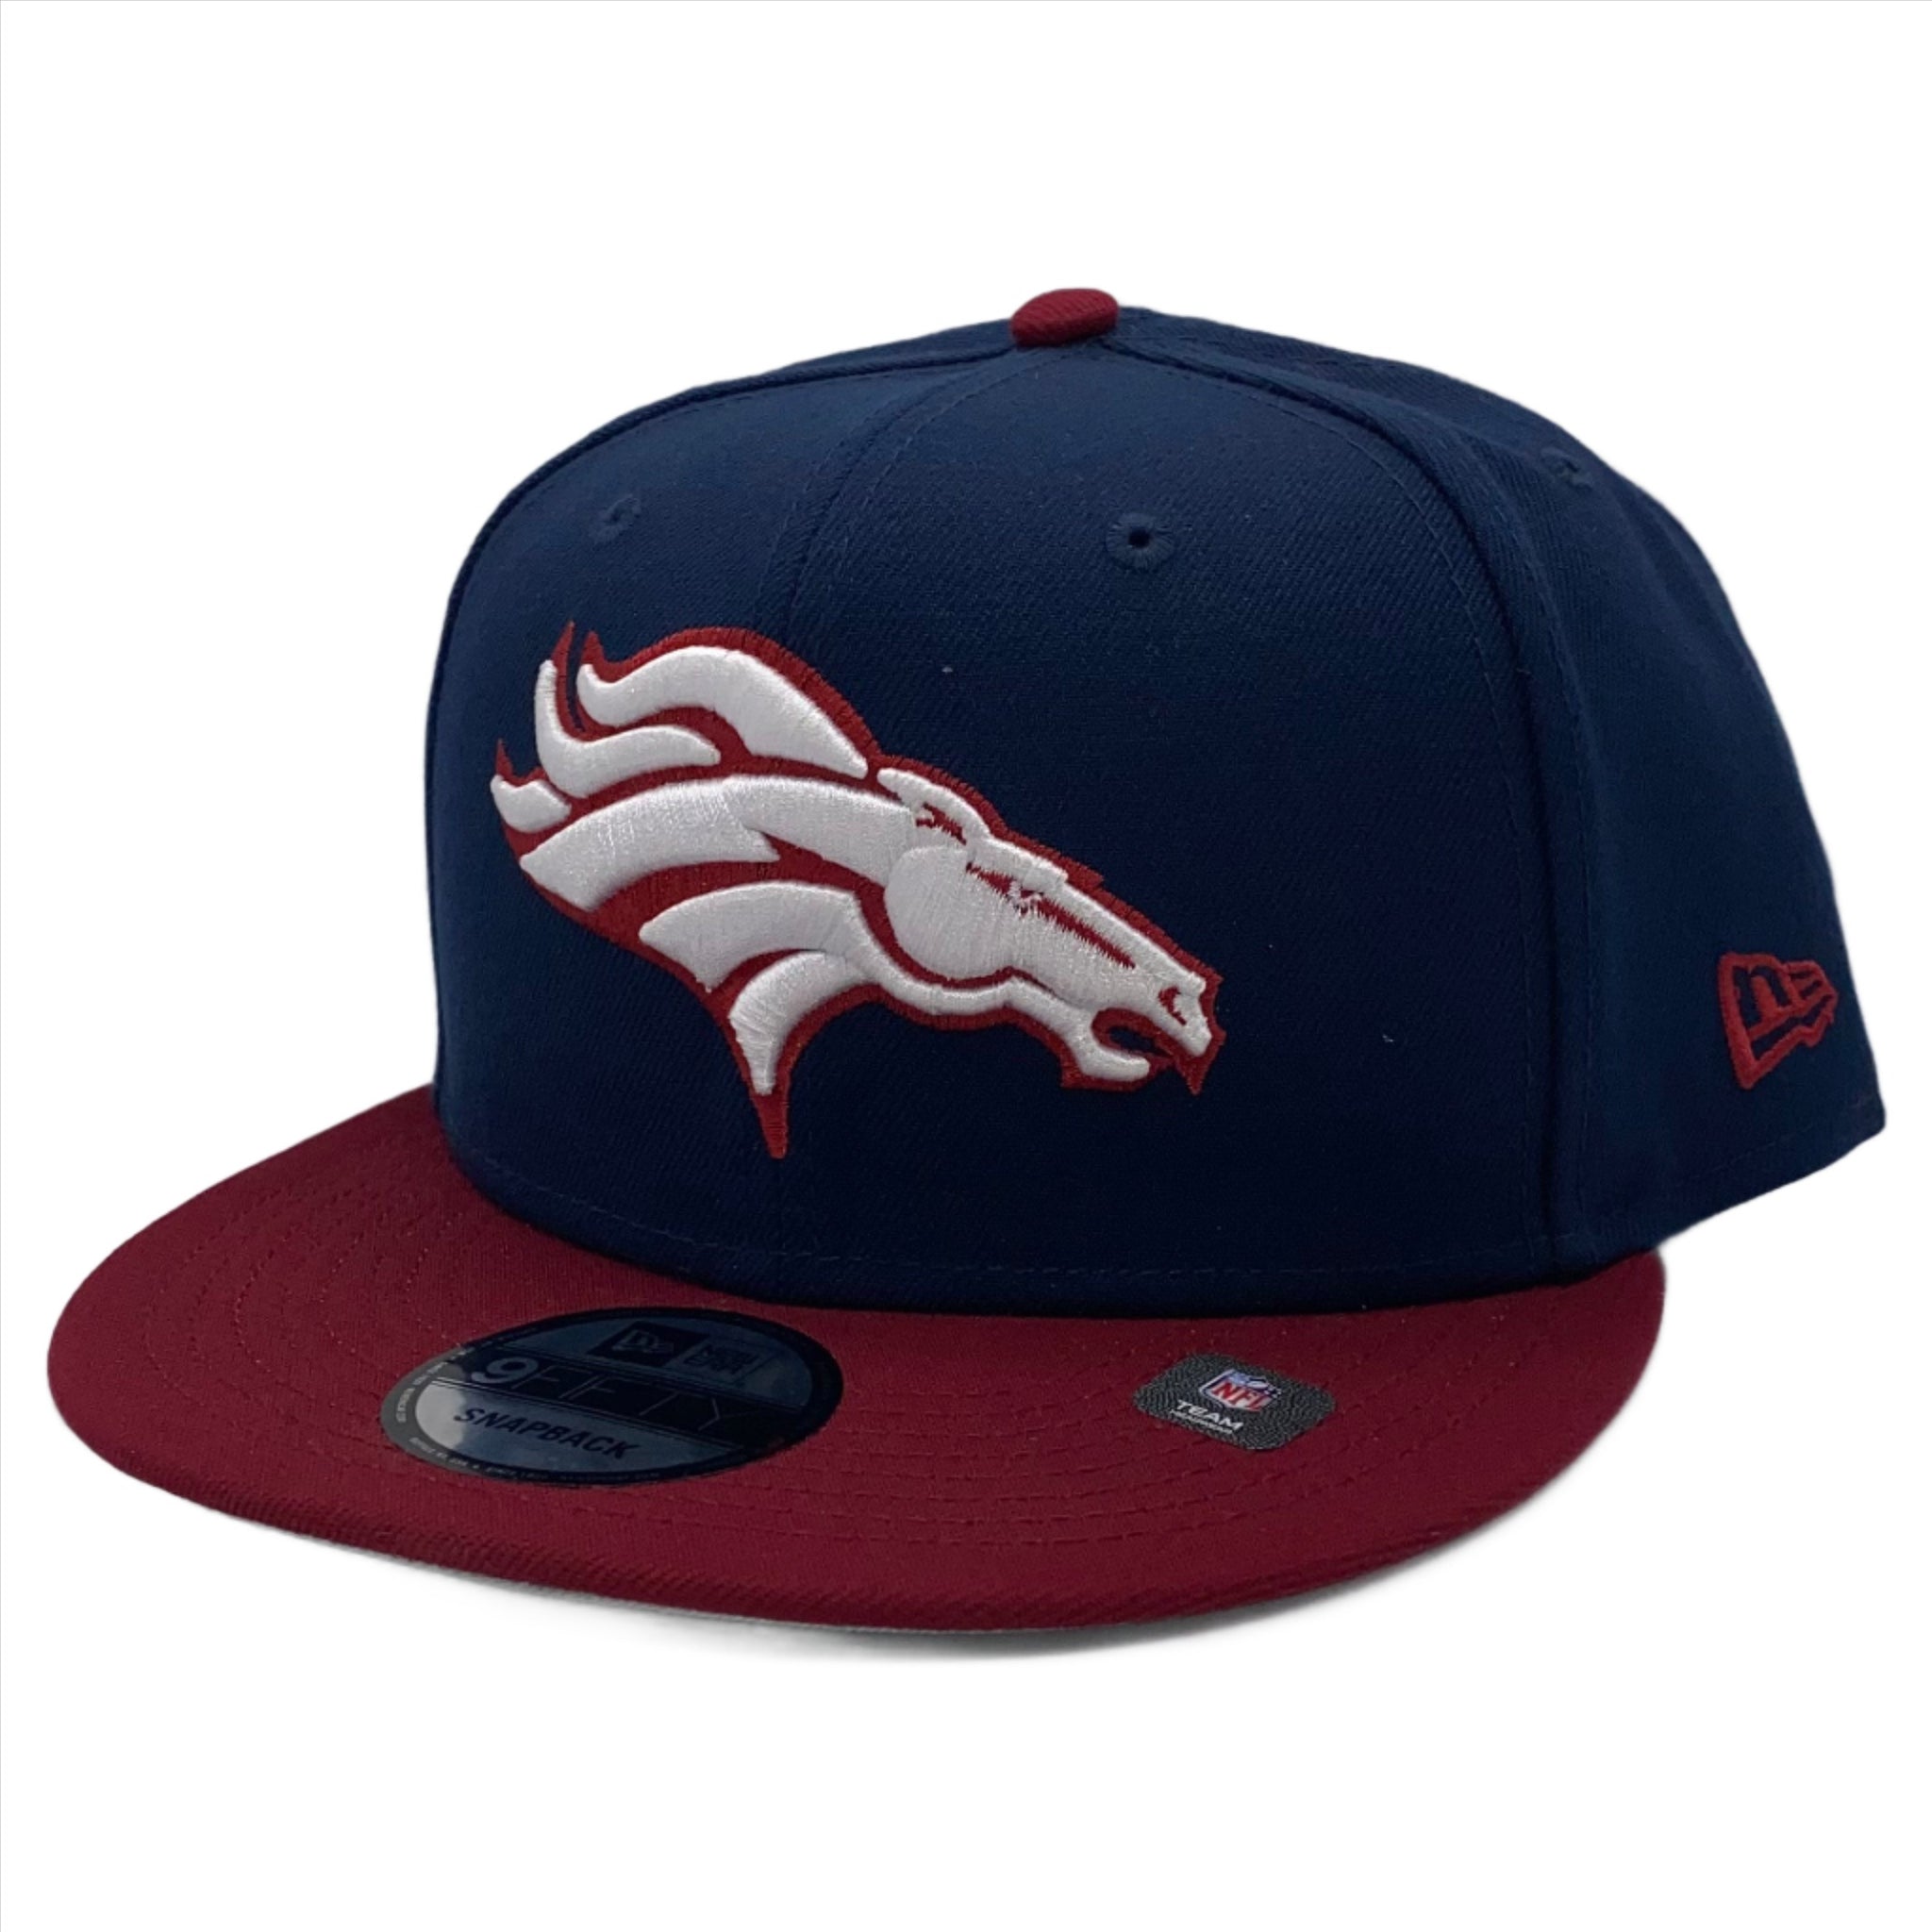 Denver Broncos 2Tone Color Pack 9FIFTY Snapback Hat - Navy/Cardinals